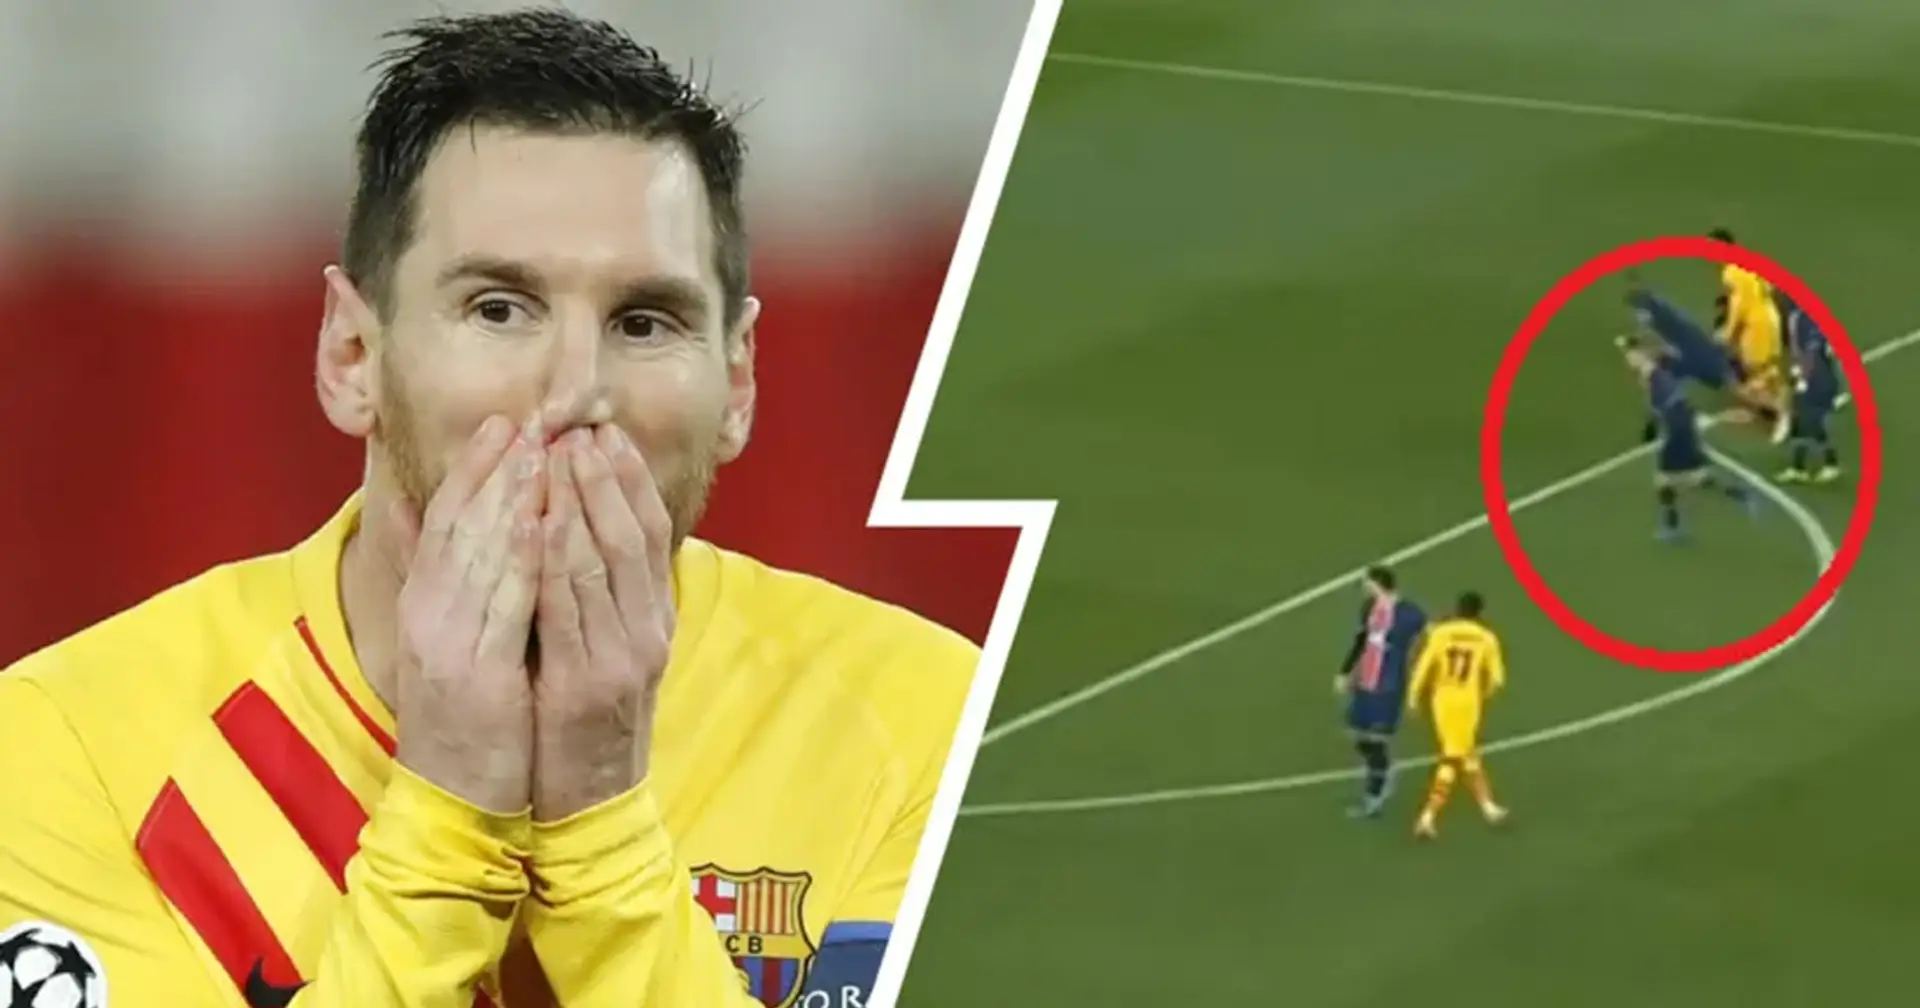 Por que debería repetirse el penalti de Leo Messi vs PSG: explicado en 30 segundos